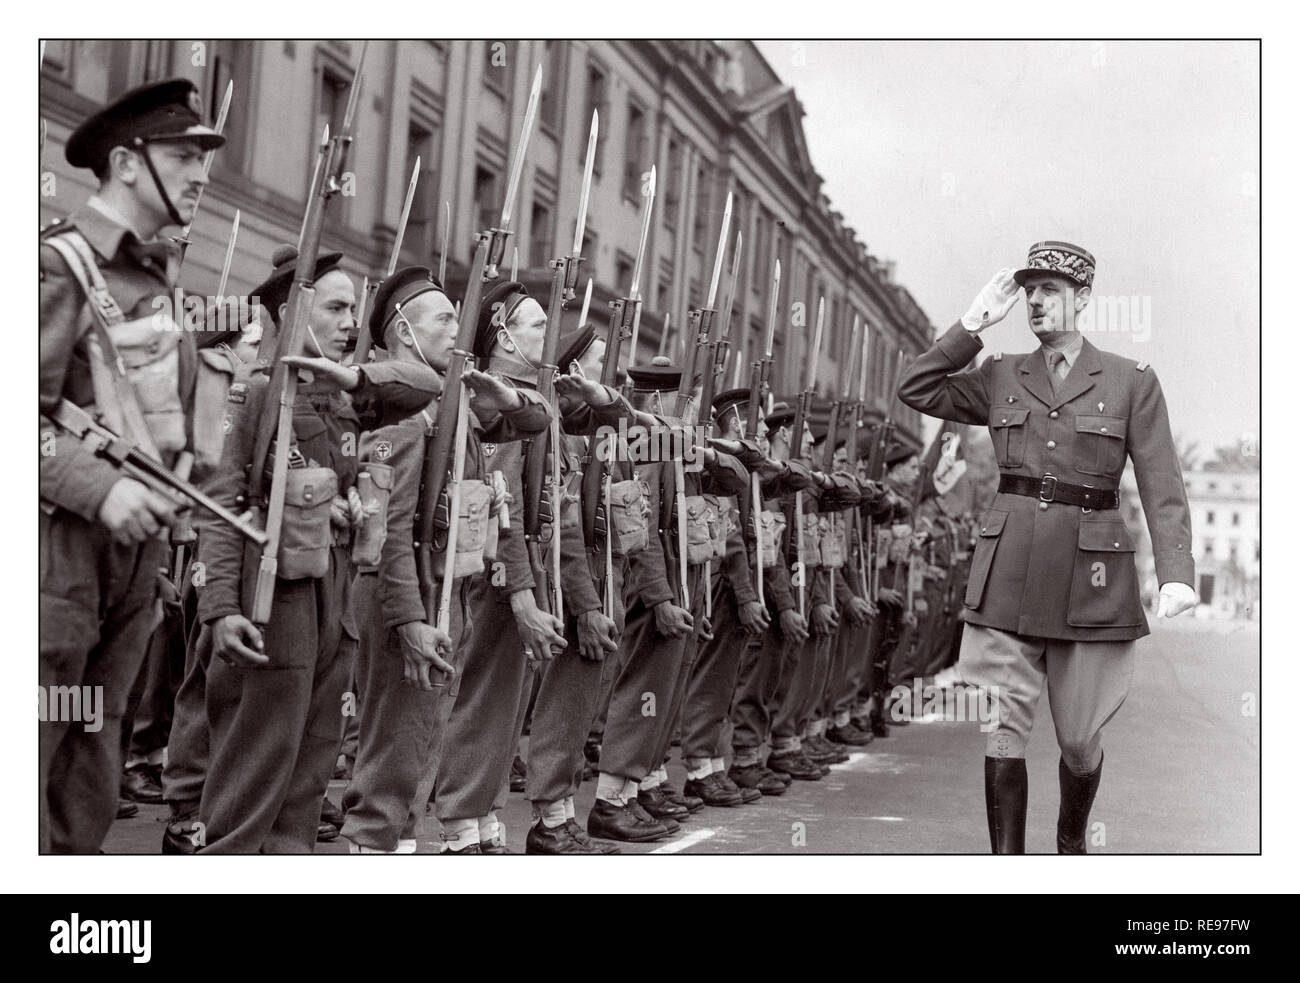 FREIE FRANZÖSISCHE Propaganda Bild des Generals Charles de Gaulle im Exil während des Zweiten Weltkriegs Saluing Free French Commando Unit Trupps in London im Jahr 1942 am Bastille Day Stockfoto